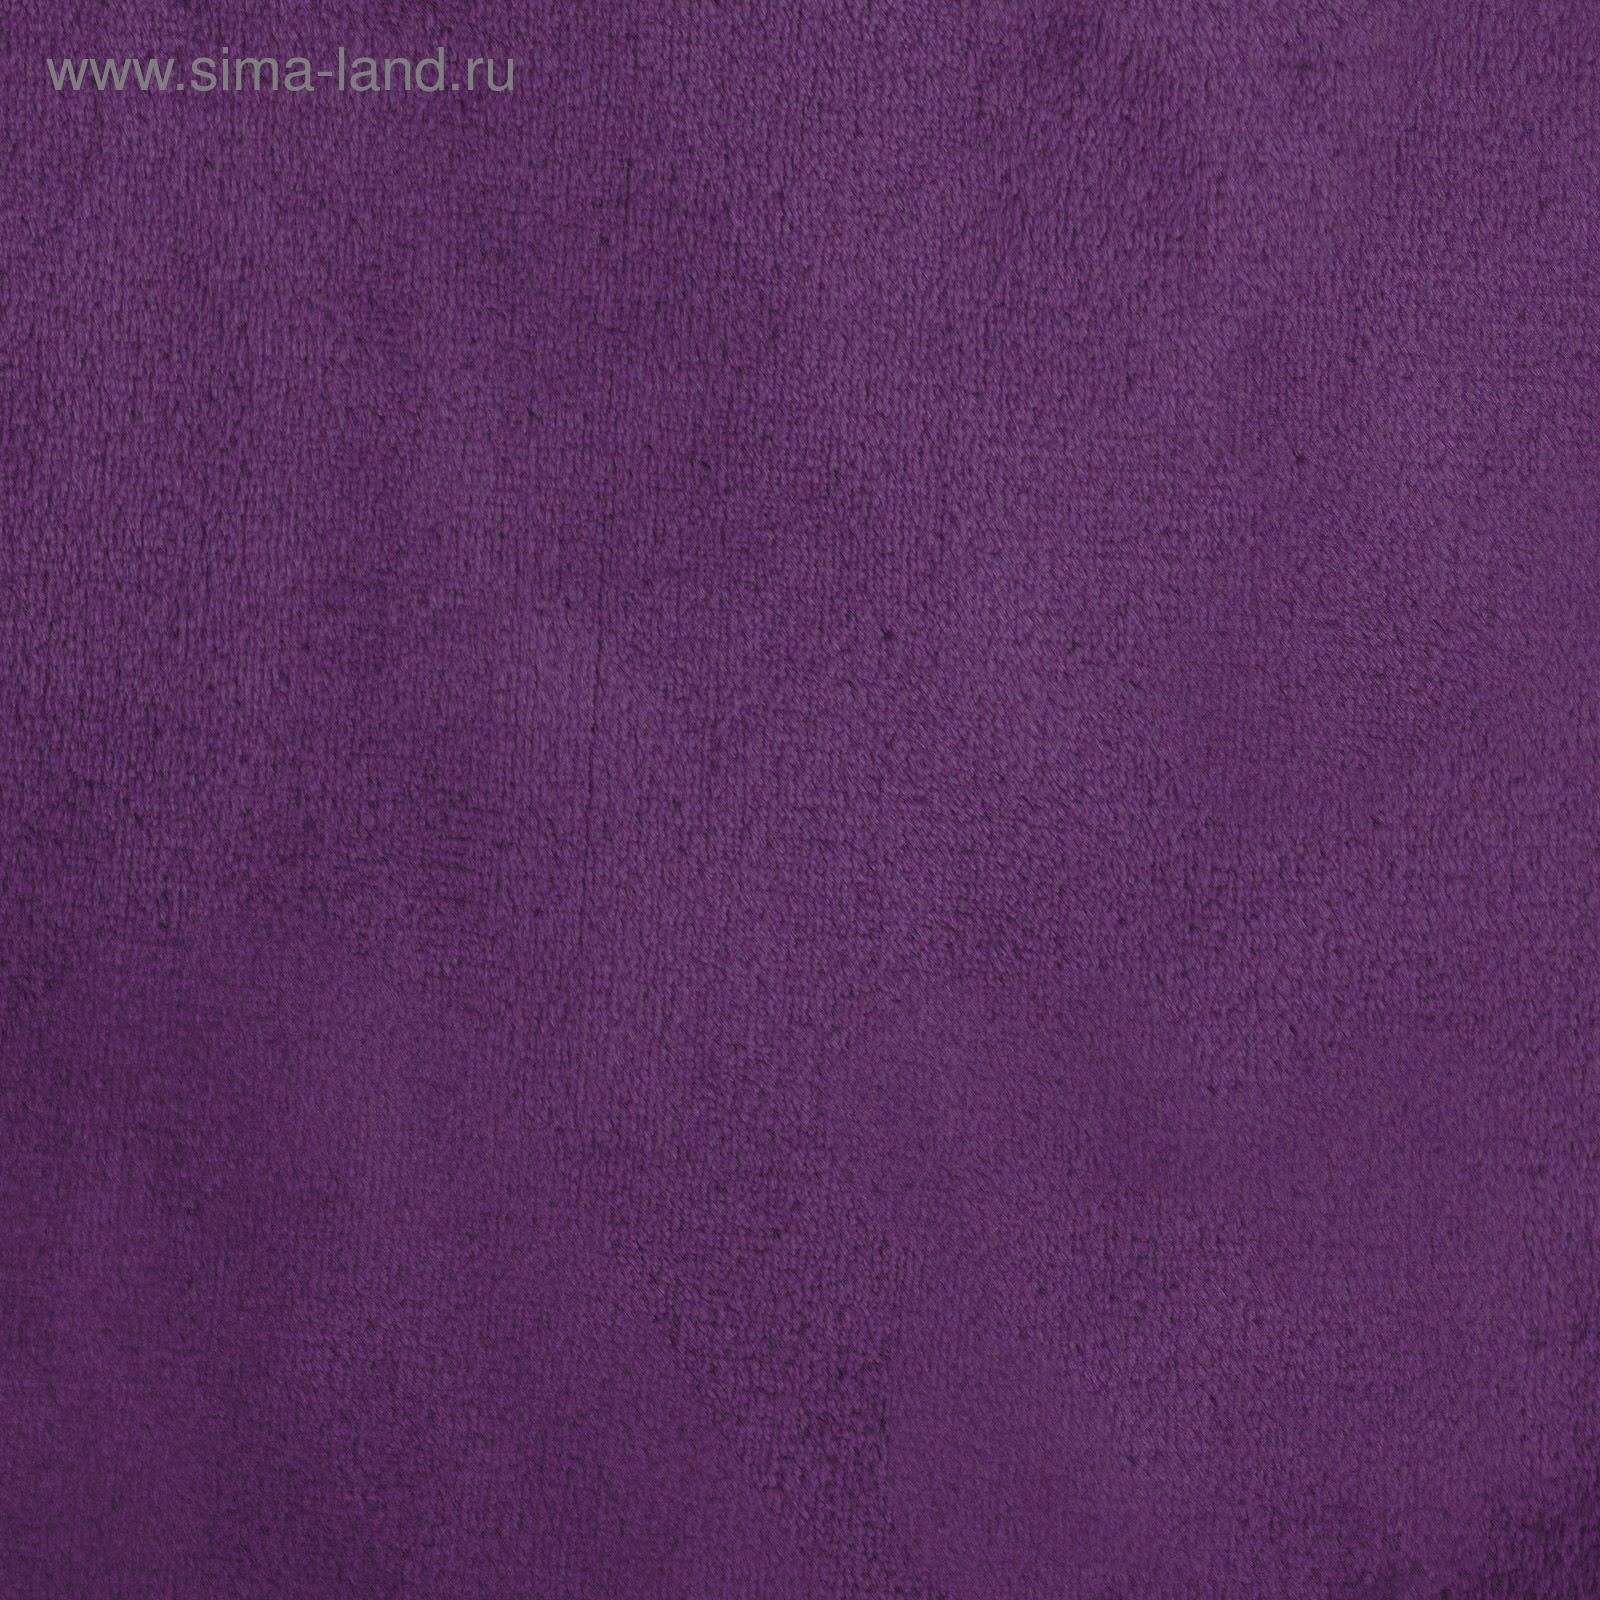 Аметист мебельные ткани Coral. D-Art Corali фиолетовые 0.53 м 9728-2. Сайт аметист ткани